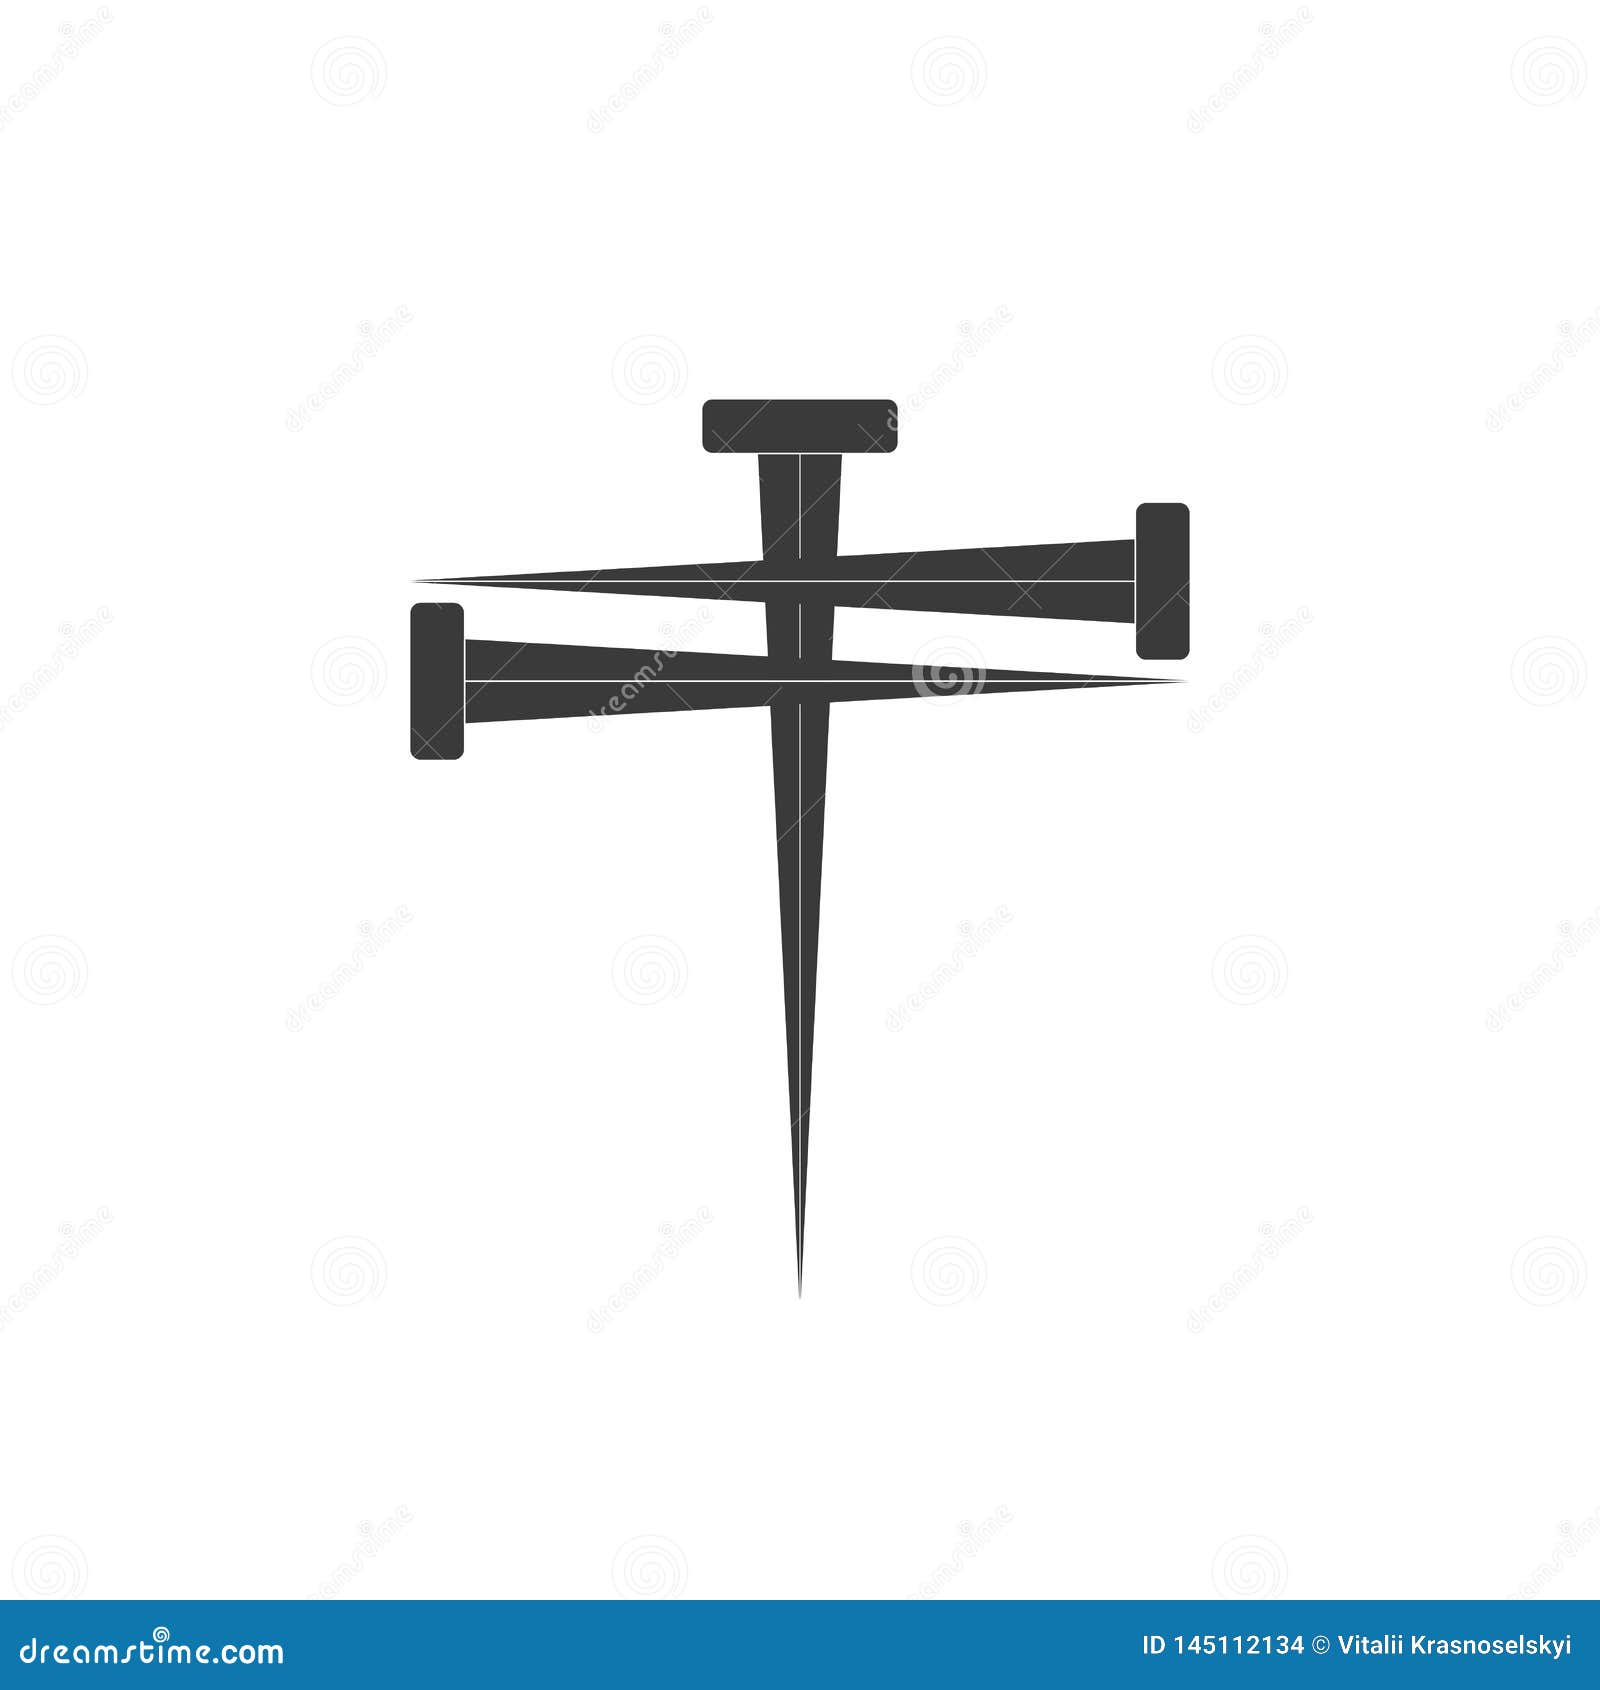 cross of nail. cross icon and nail icons. nail . 